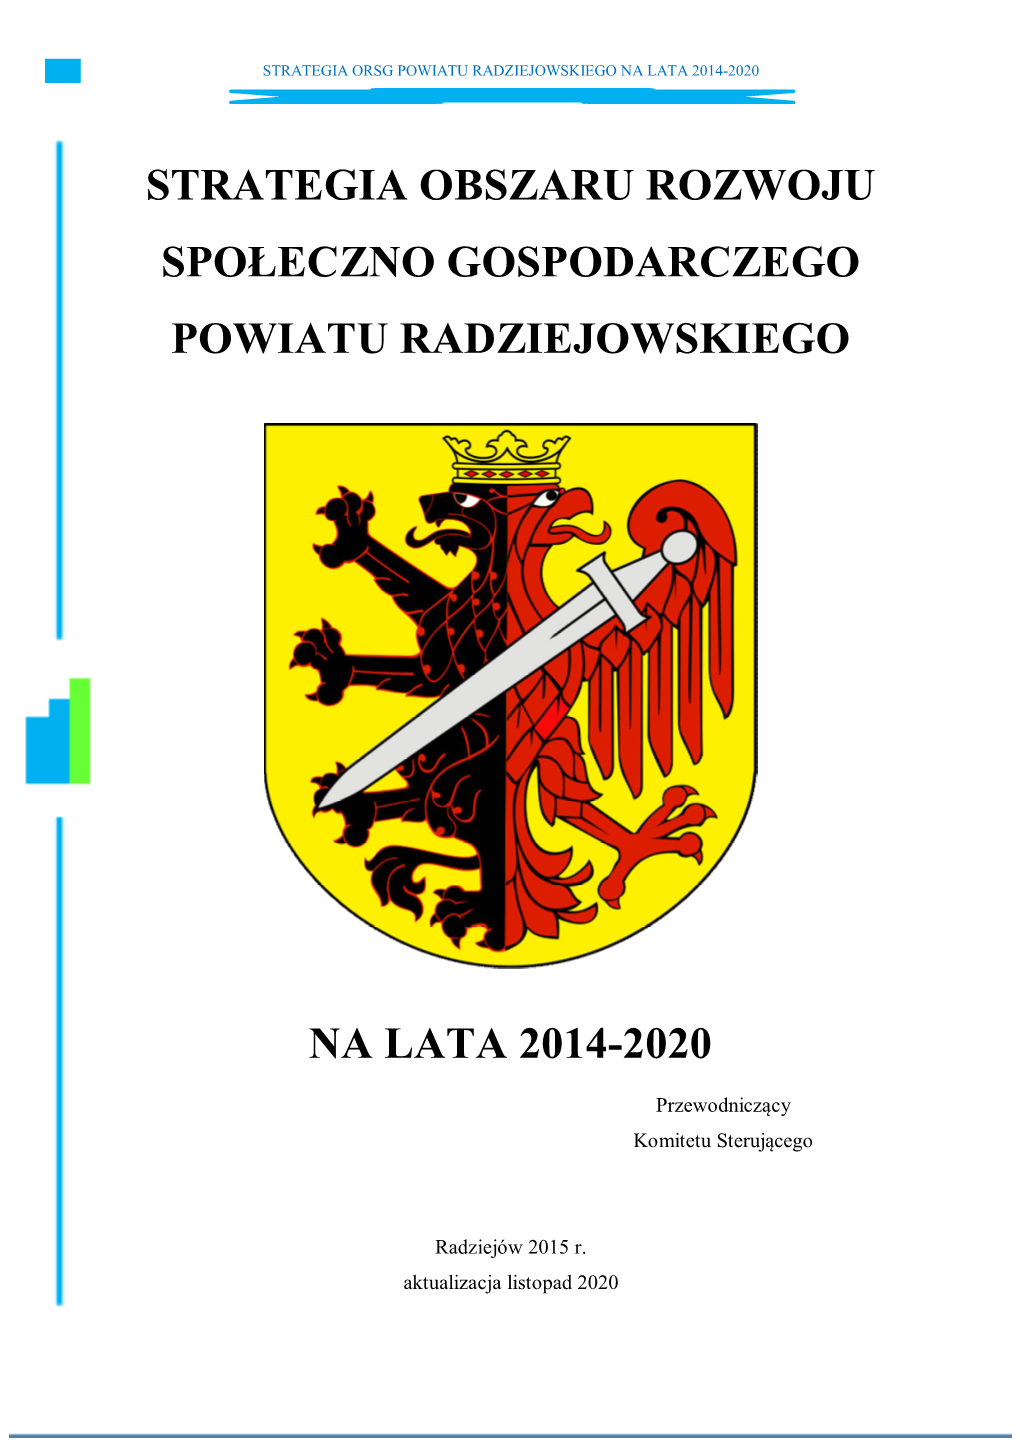 Strategia Orsg Powiatu Radziejowskiego Na Lata 2014-2020